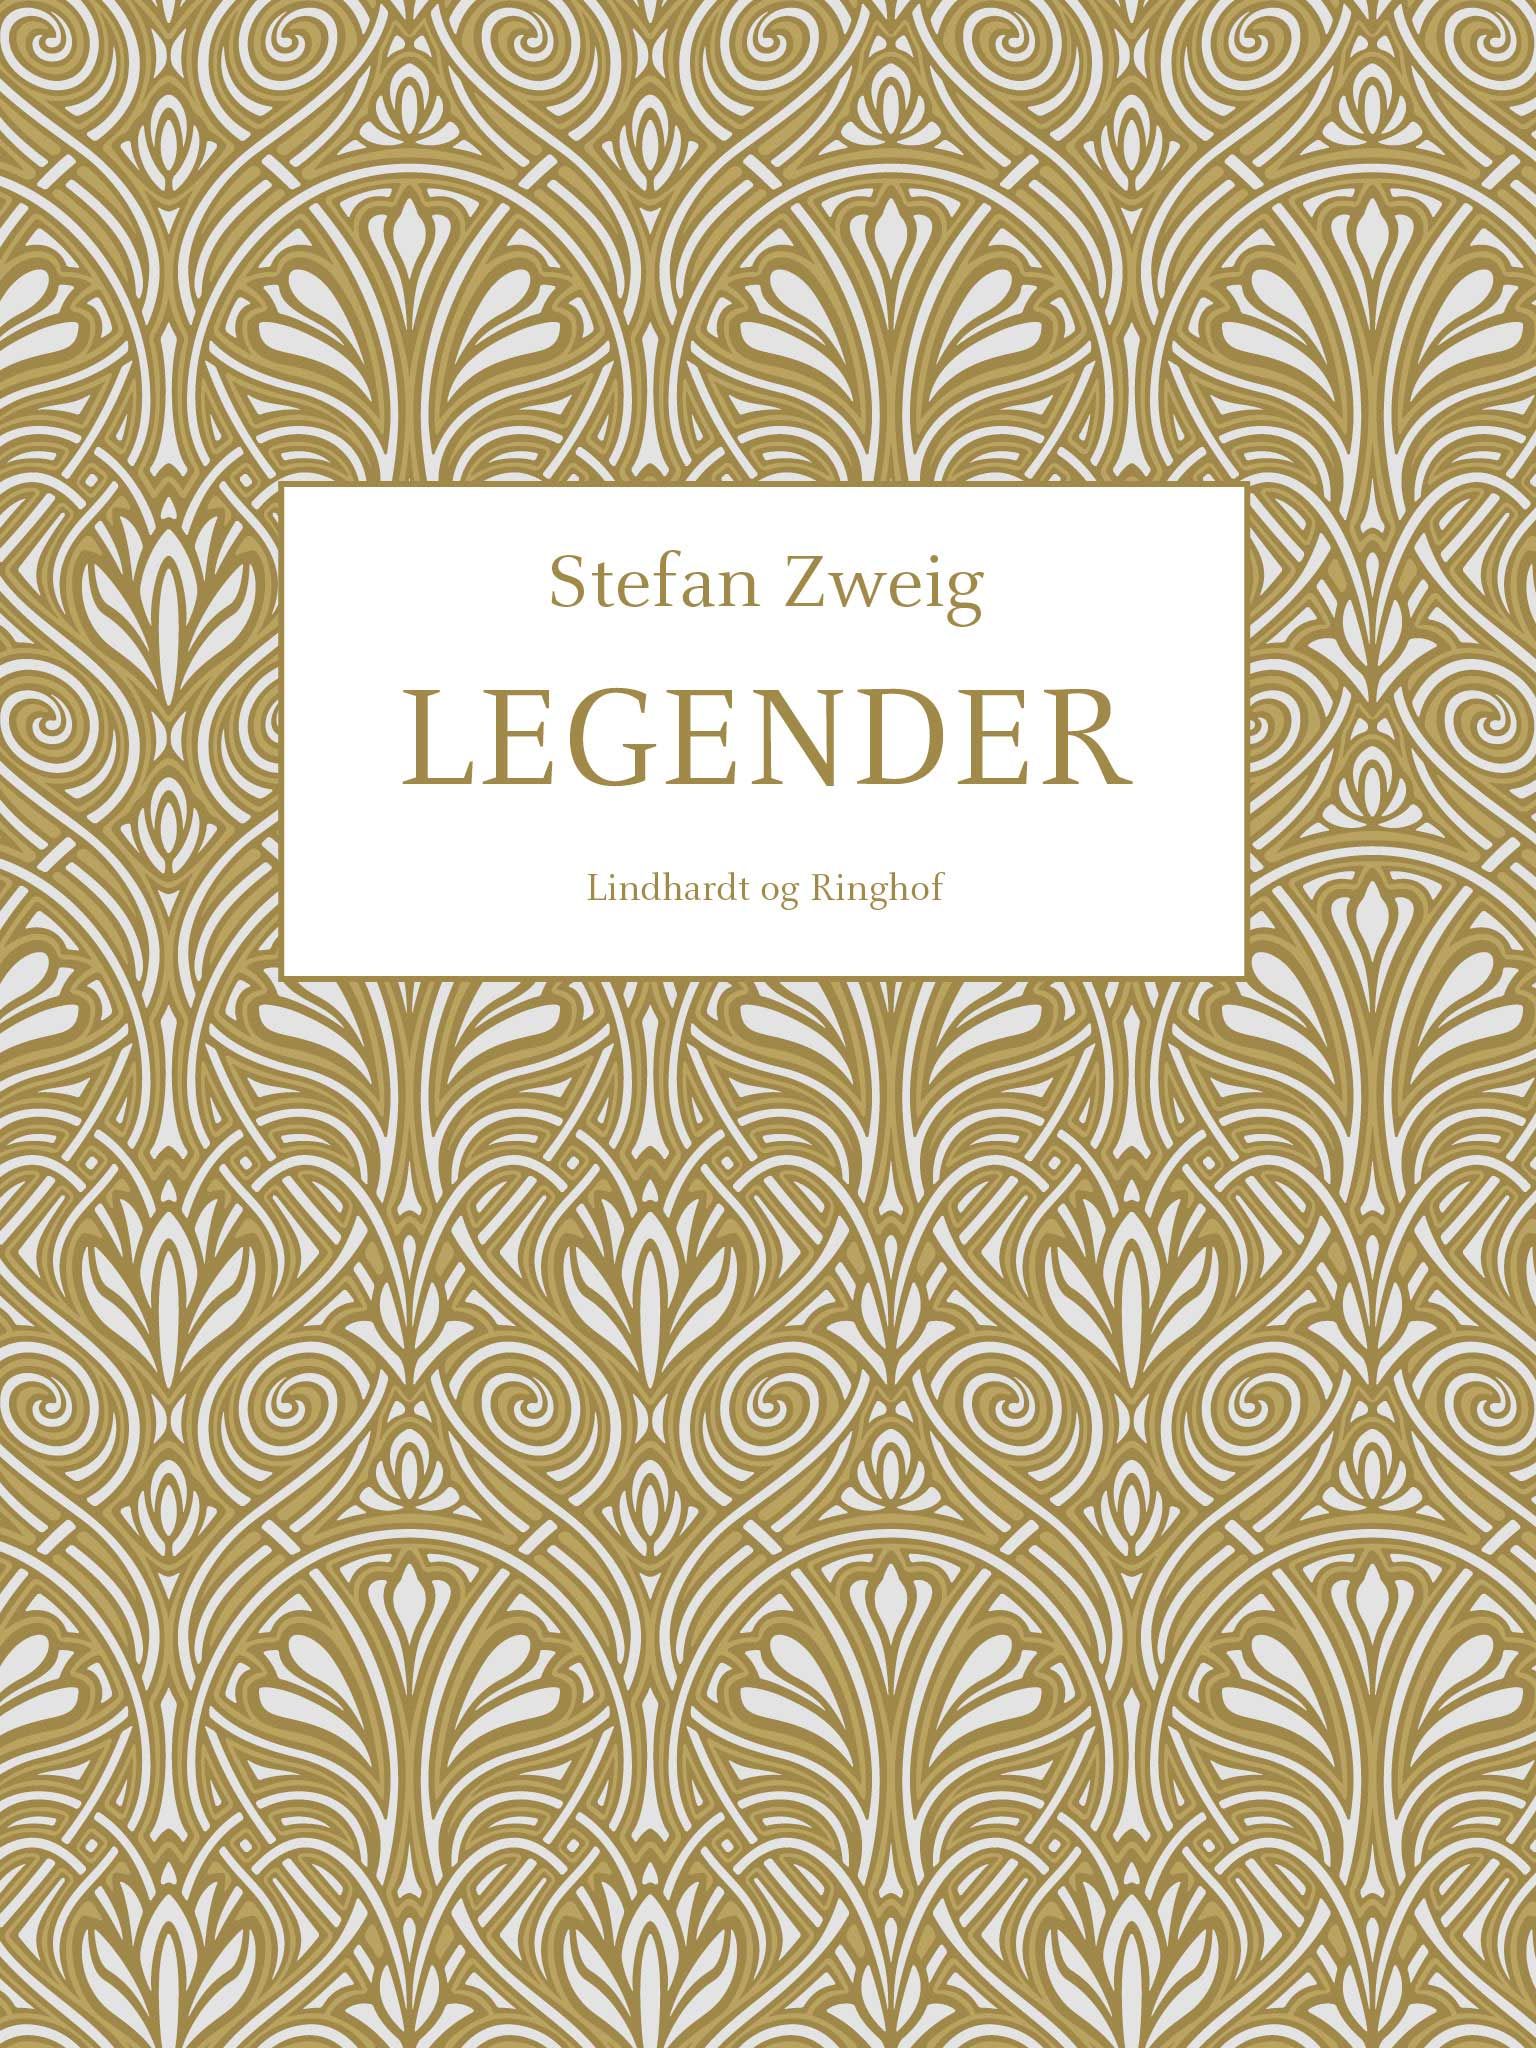 Legender, audiobook by Stefan Zweig